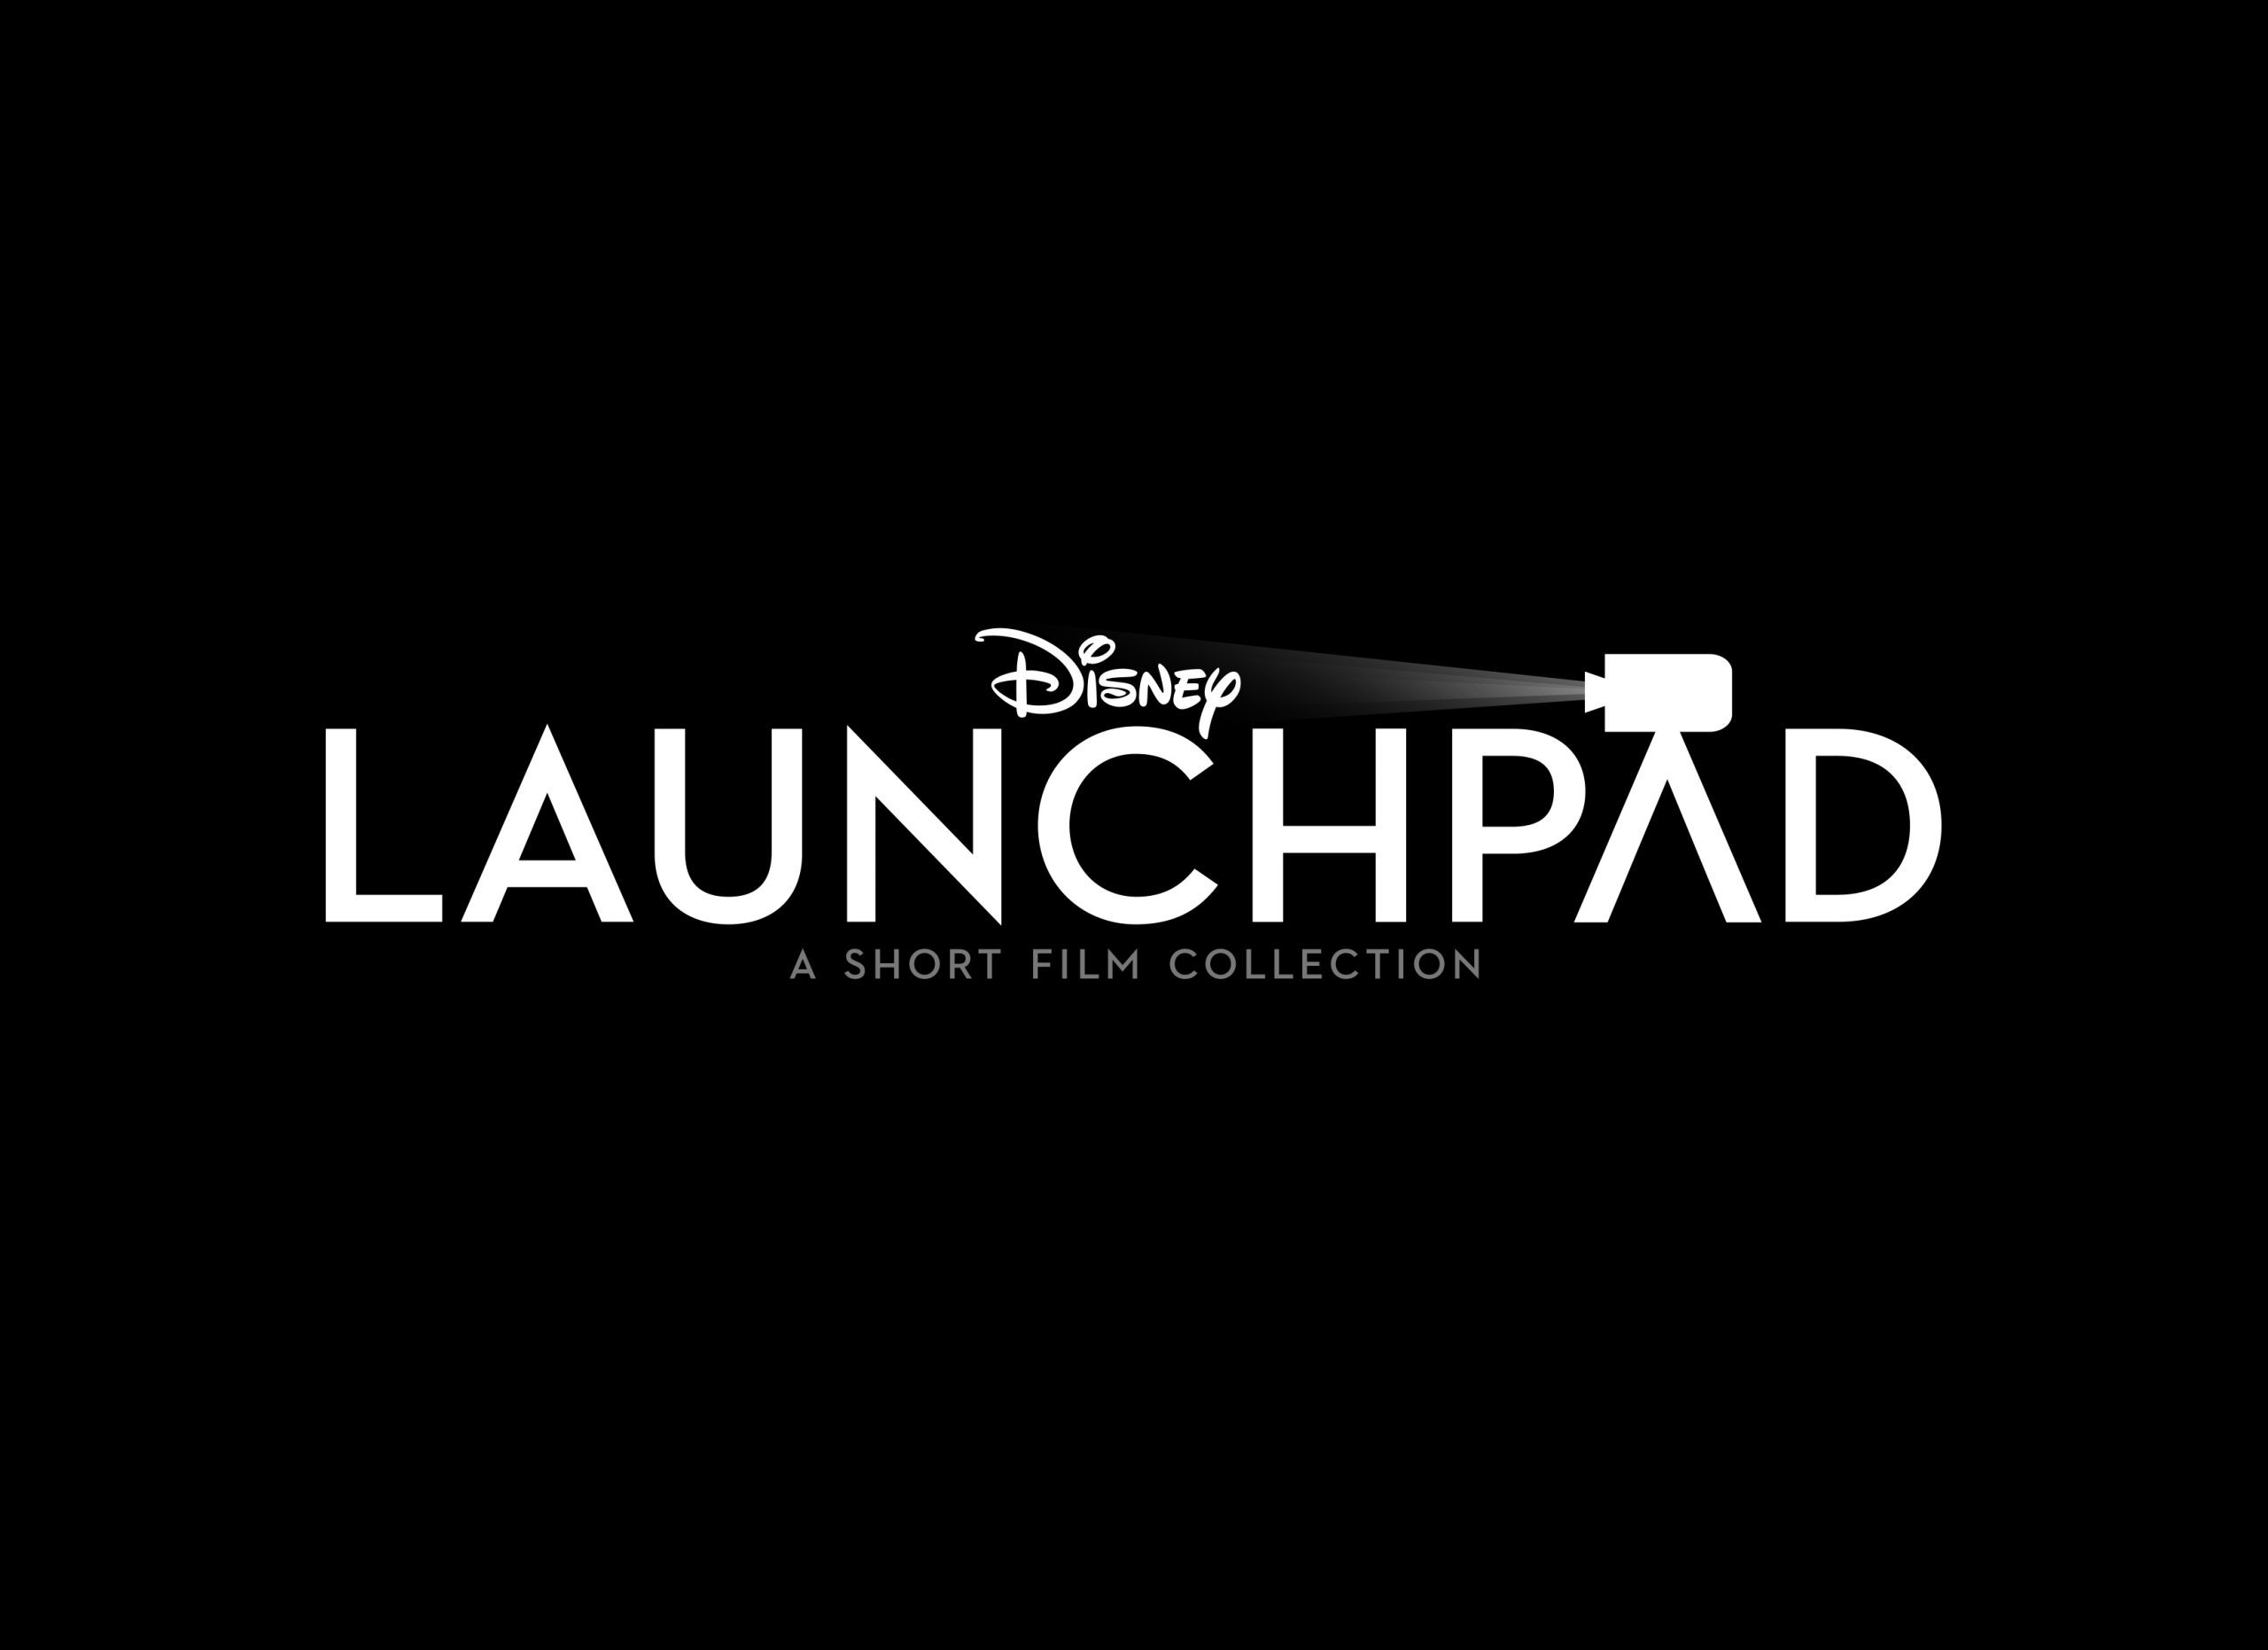 Disney+ lança trailer oficial e imagens da coleção "Launchpad" de curtas de uma nova geração de contadores de histórias